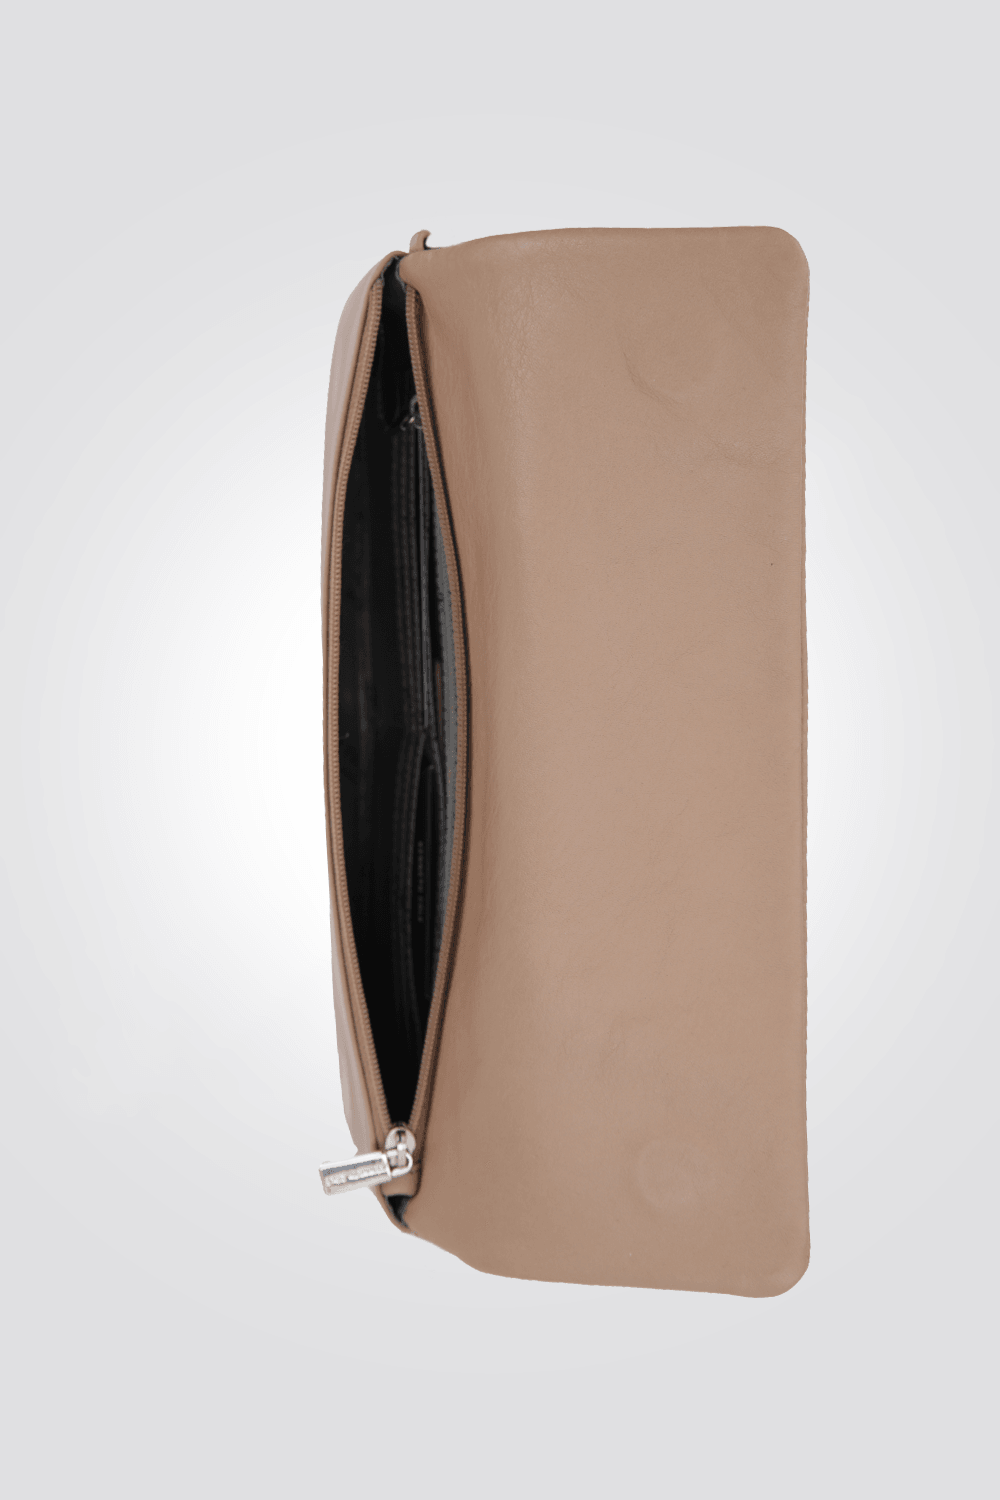 KENNETH COLE - תיק עור קרוס בצבע ורוד - MASHBIR//365